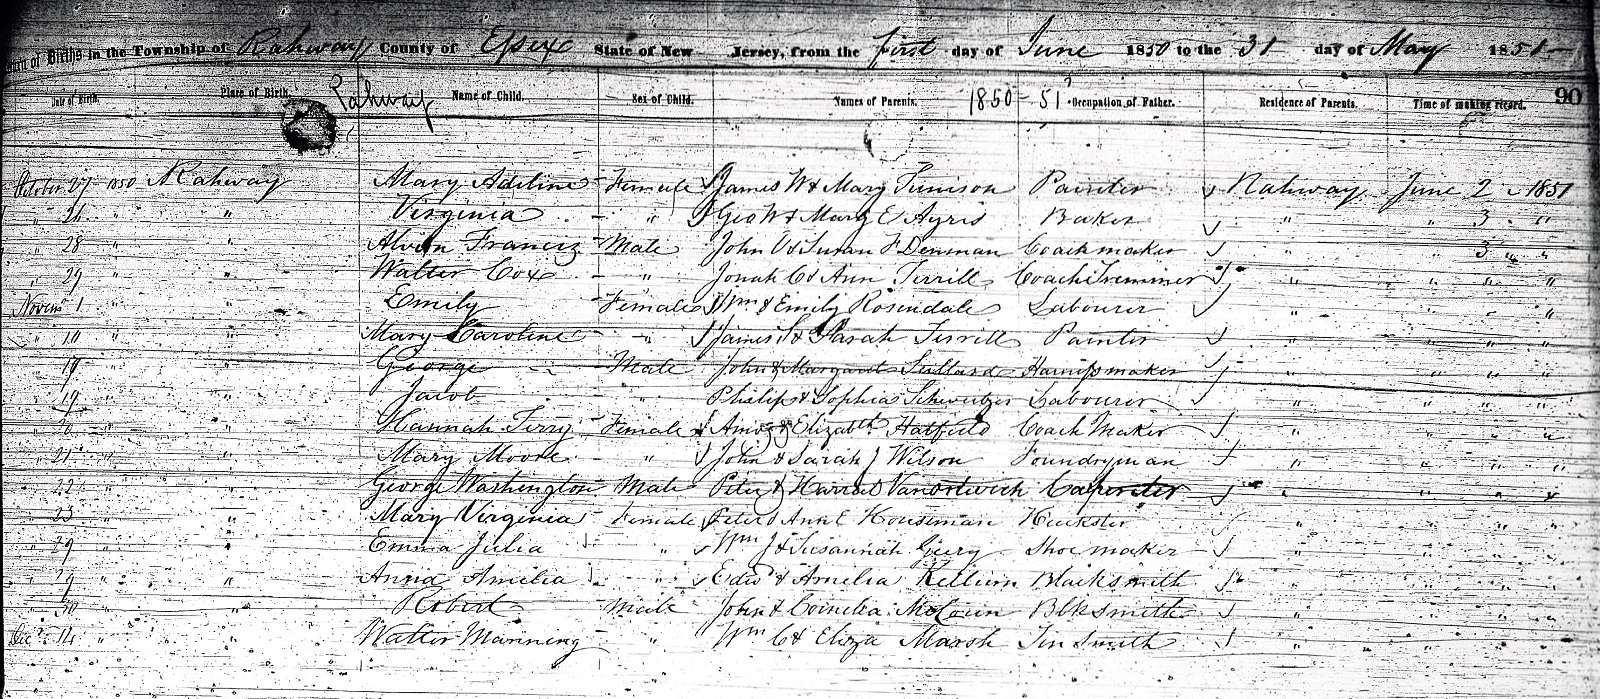 Isaac Winans Birth Record